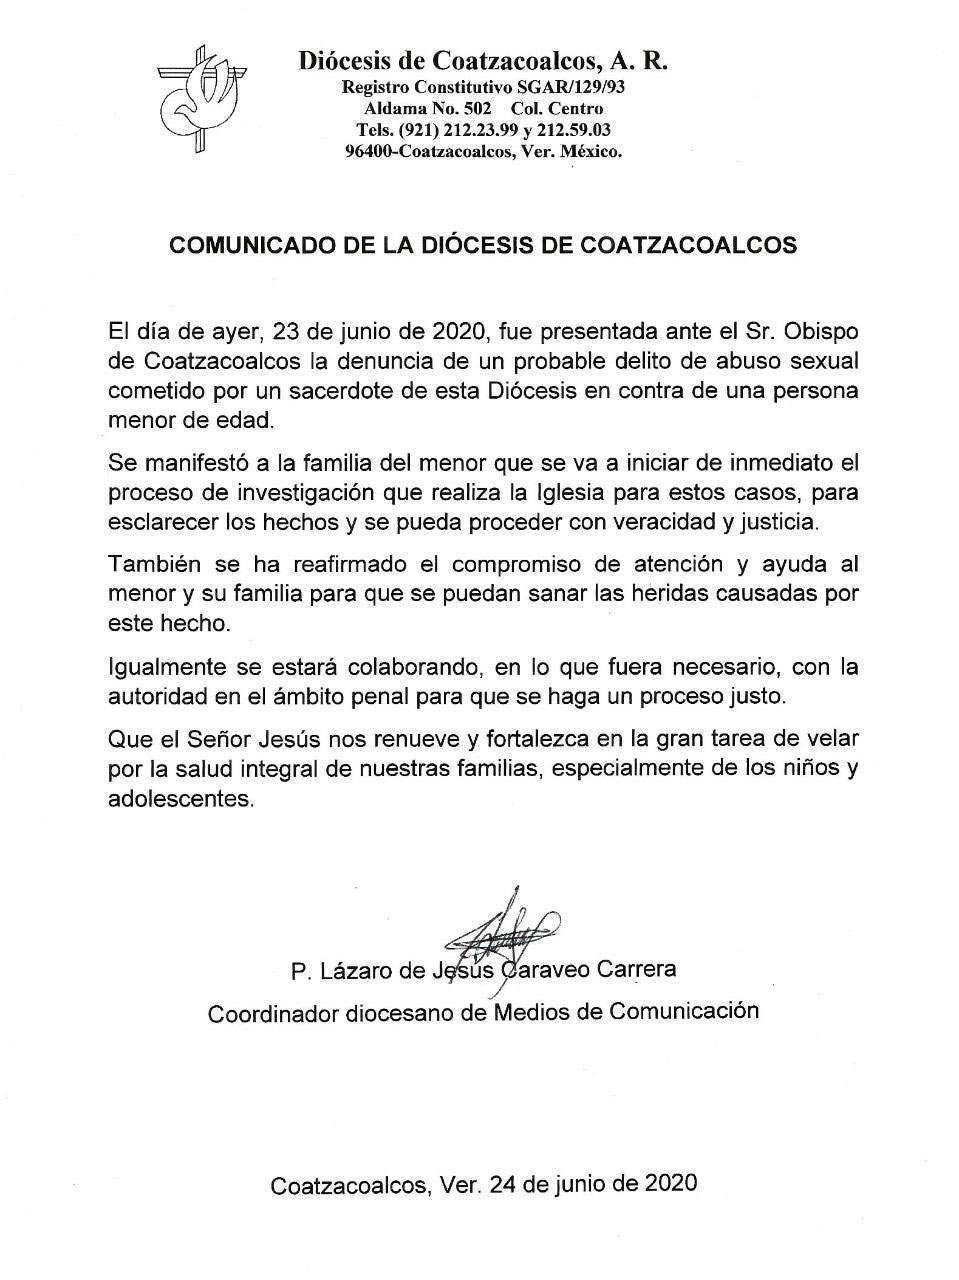 Diócesis de Coatzacoalcos pide "proceso justo" para sacerdote acusado de intentar abusar de un menor